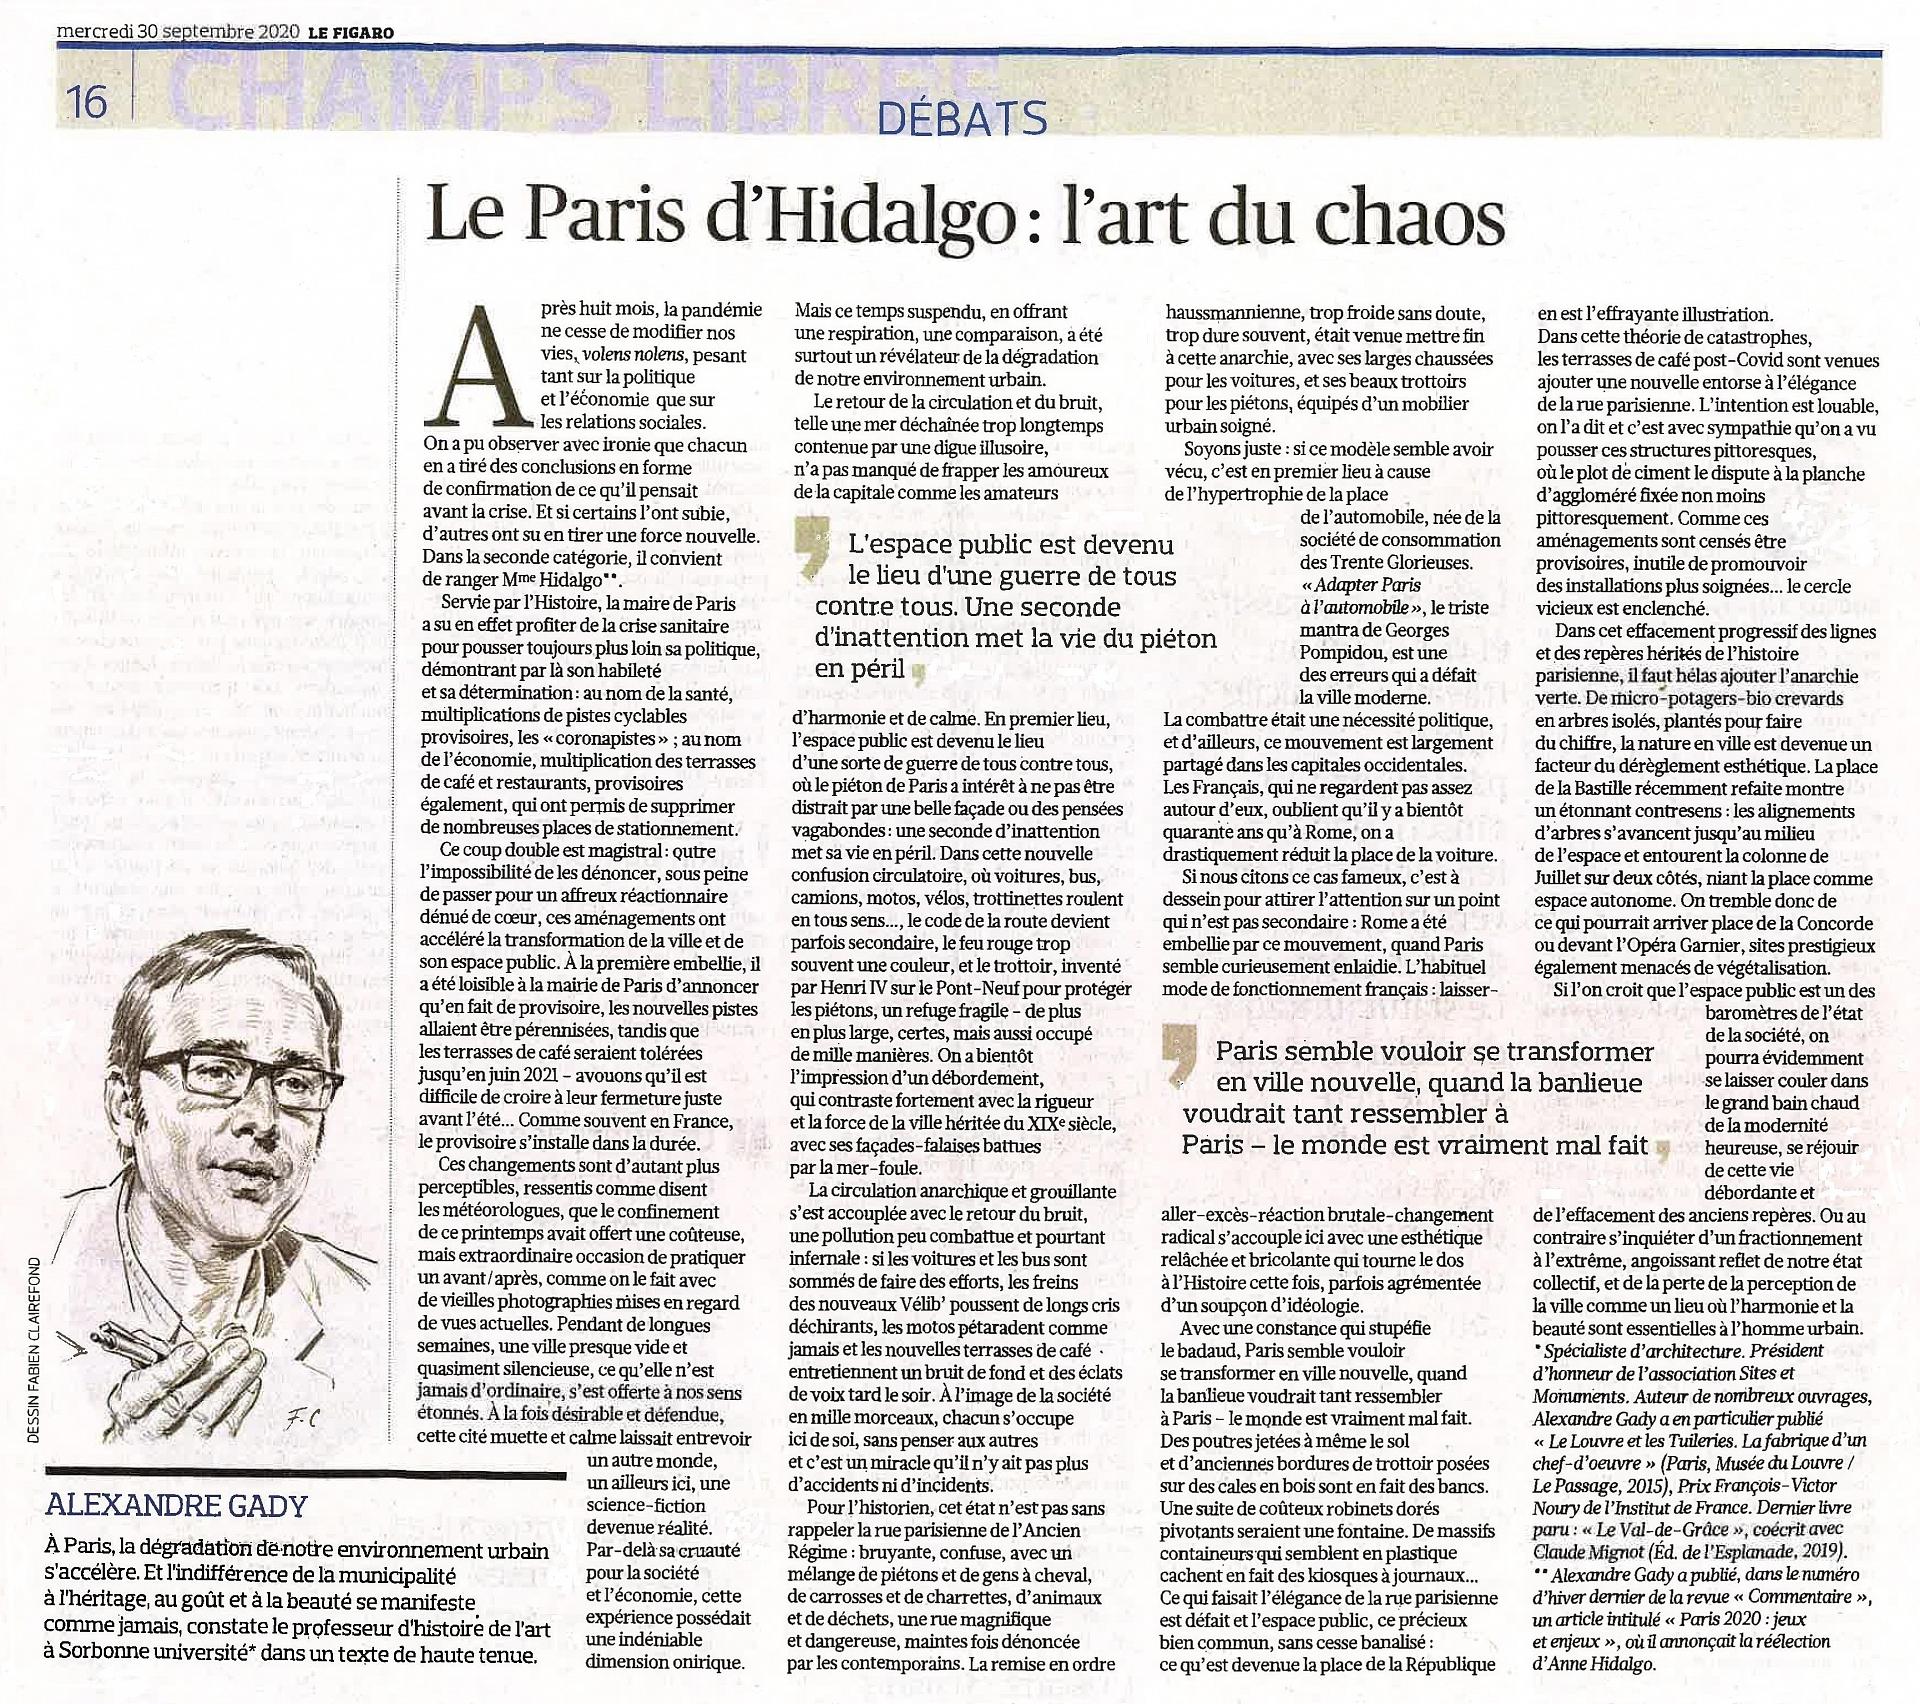 Le Figaro A. Gady 30 septembre 2020 L'art du chaos